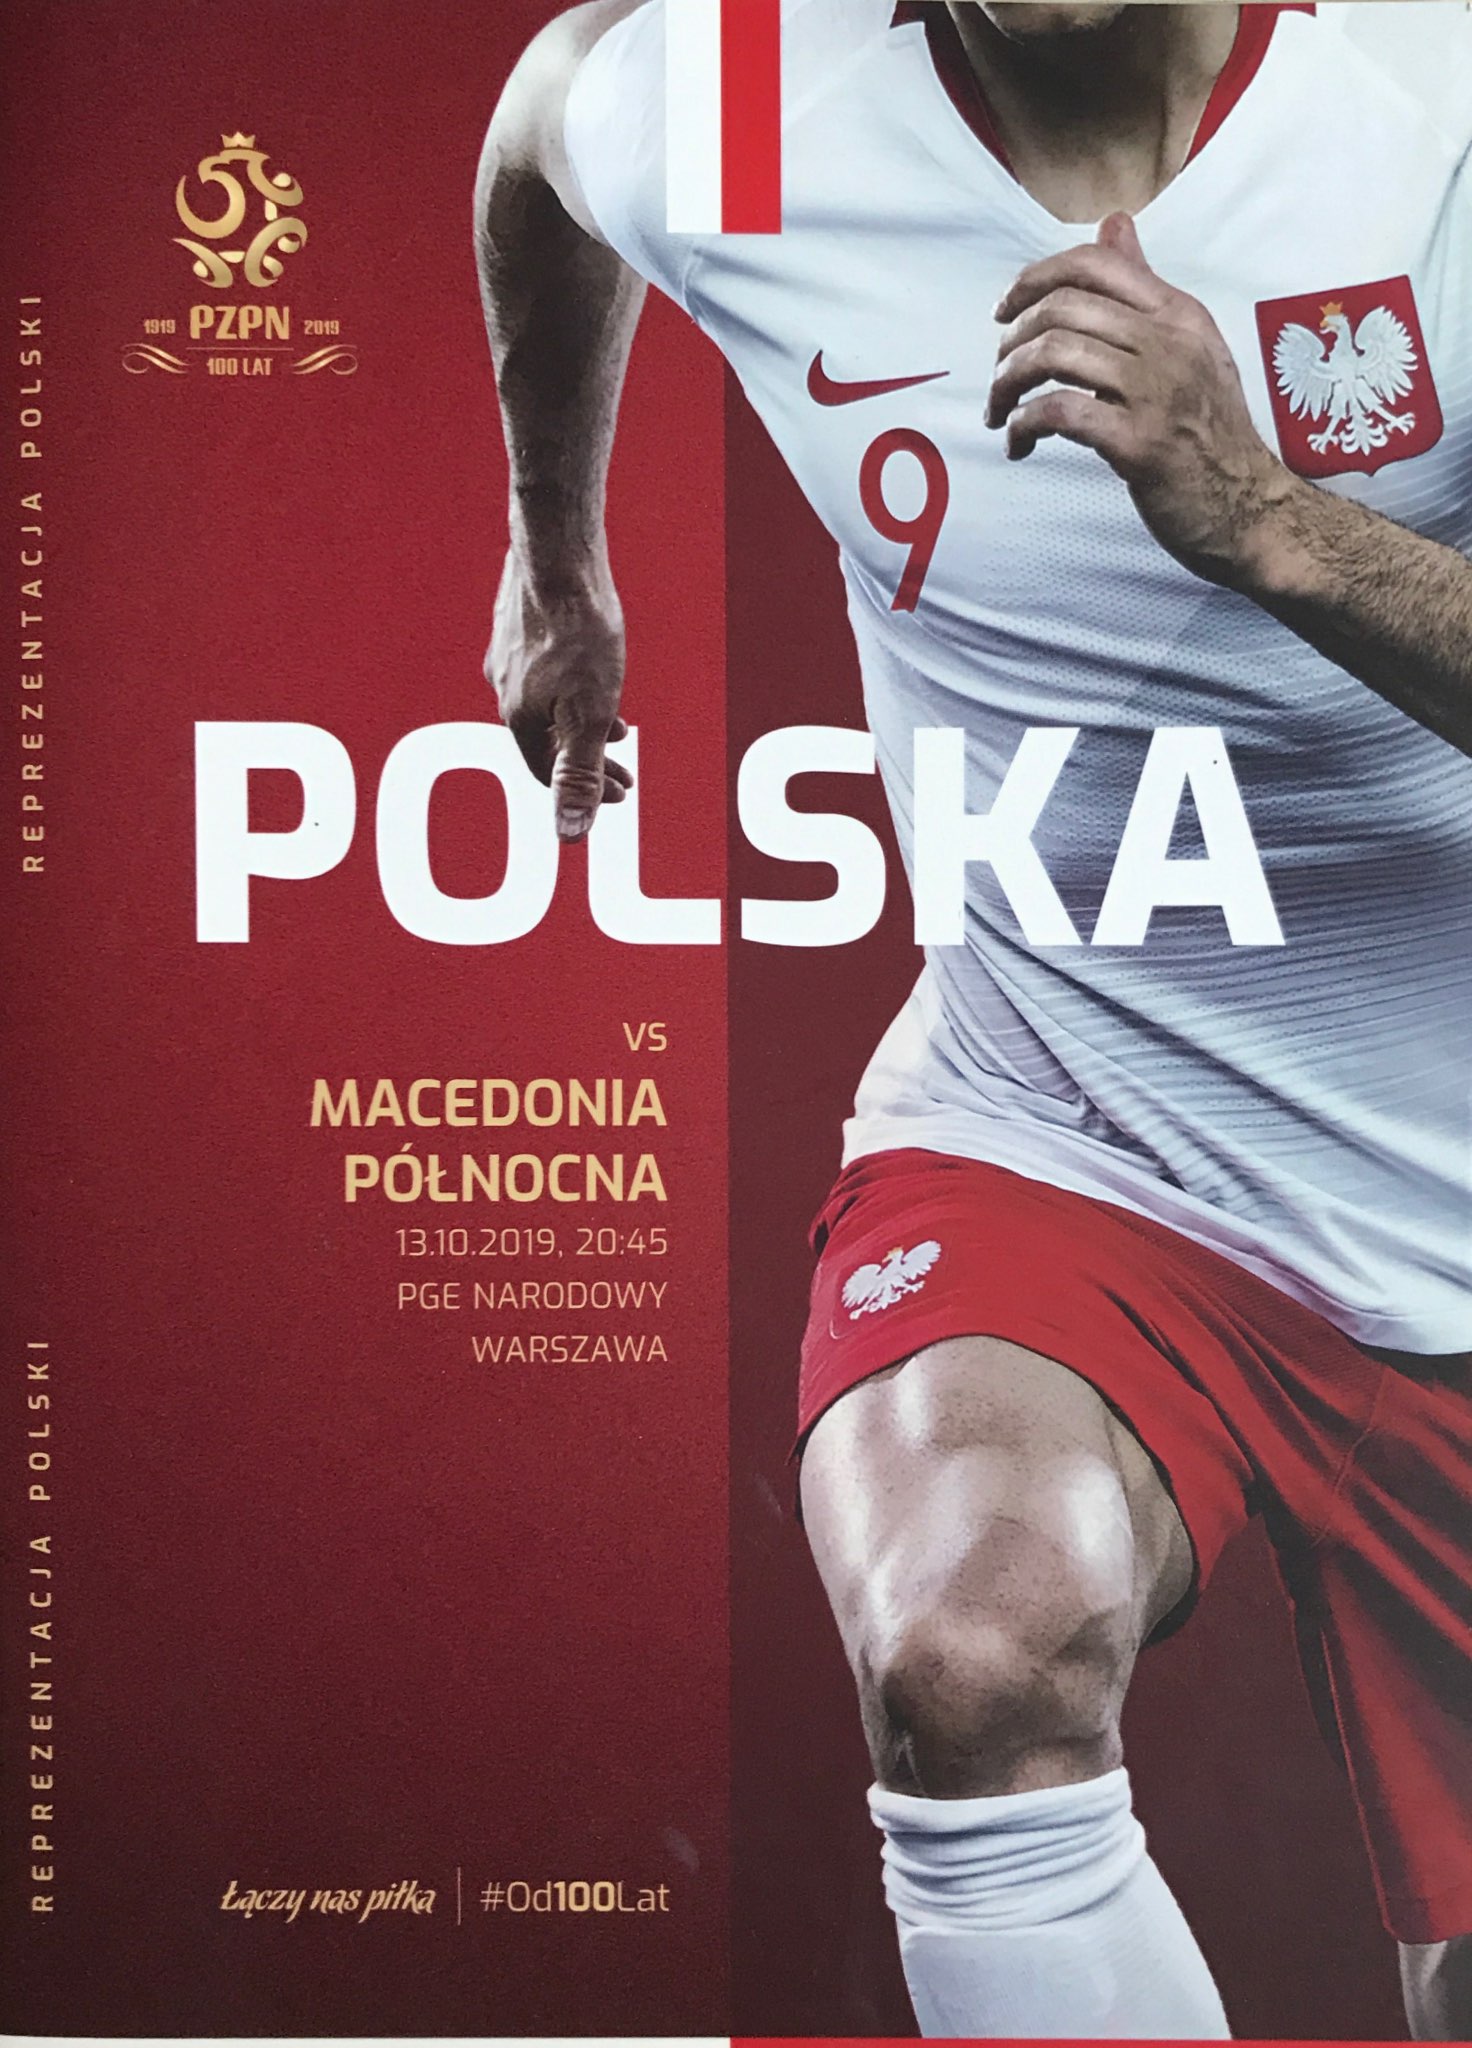 Program meczowy Polska - Macedonia Północna (13.10.2019)